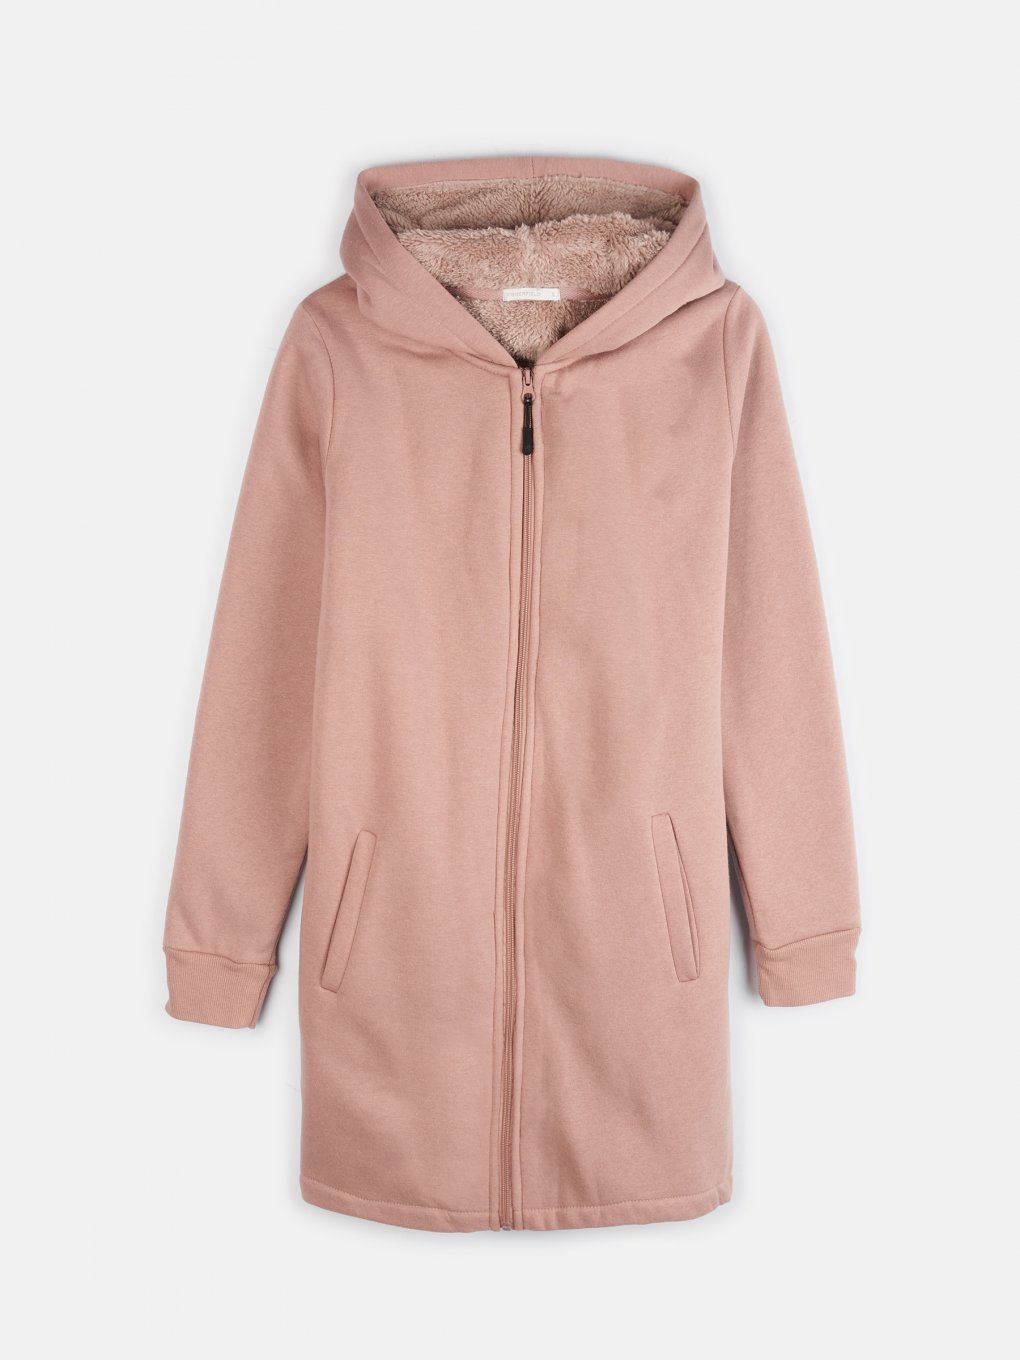 Warm zip-up hoodie